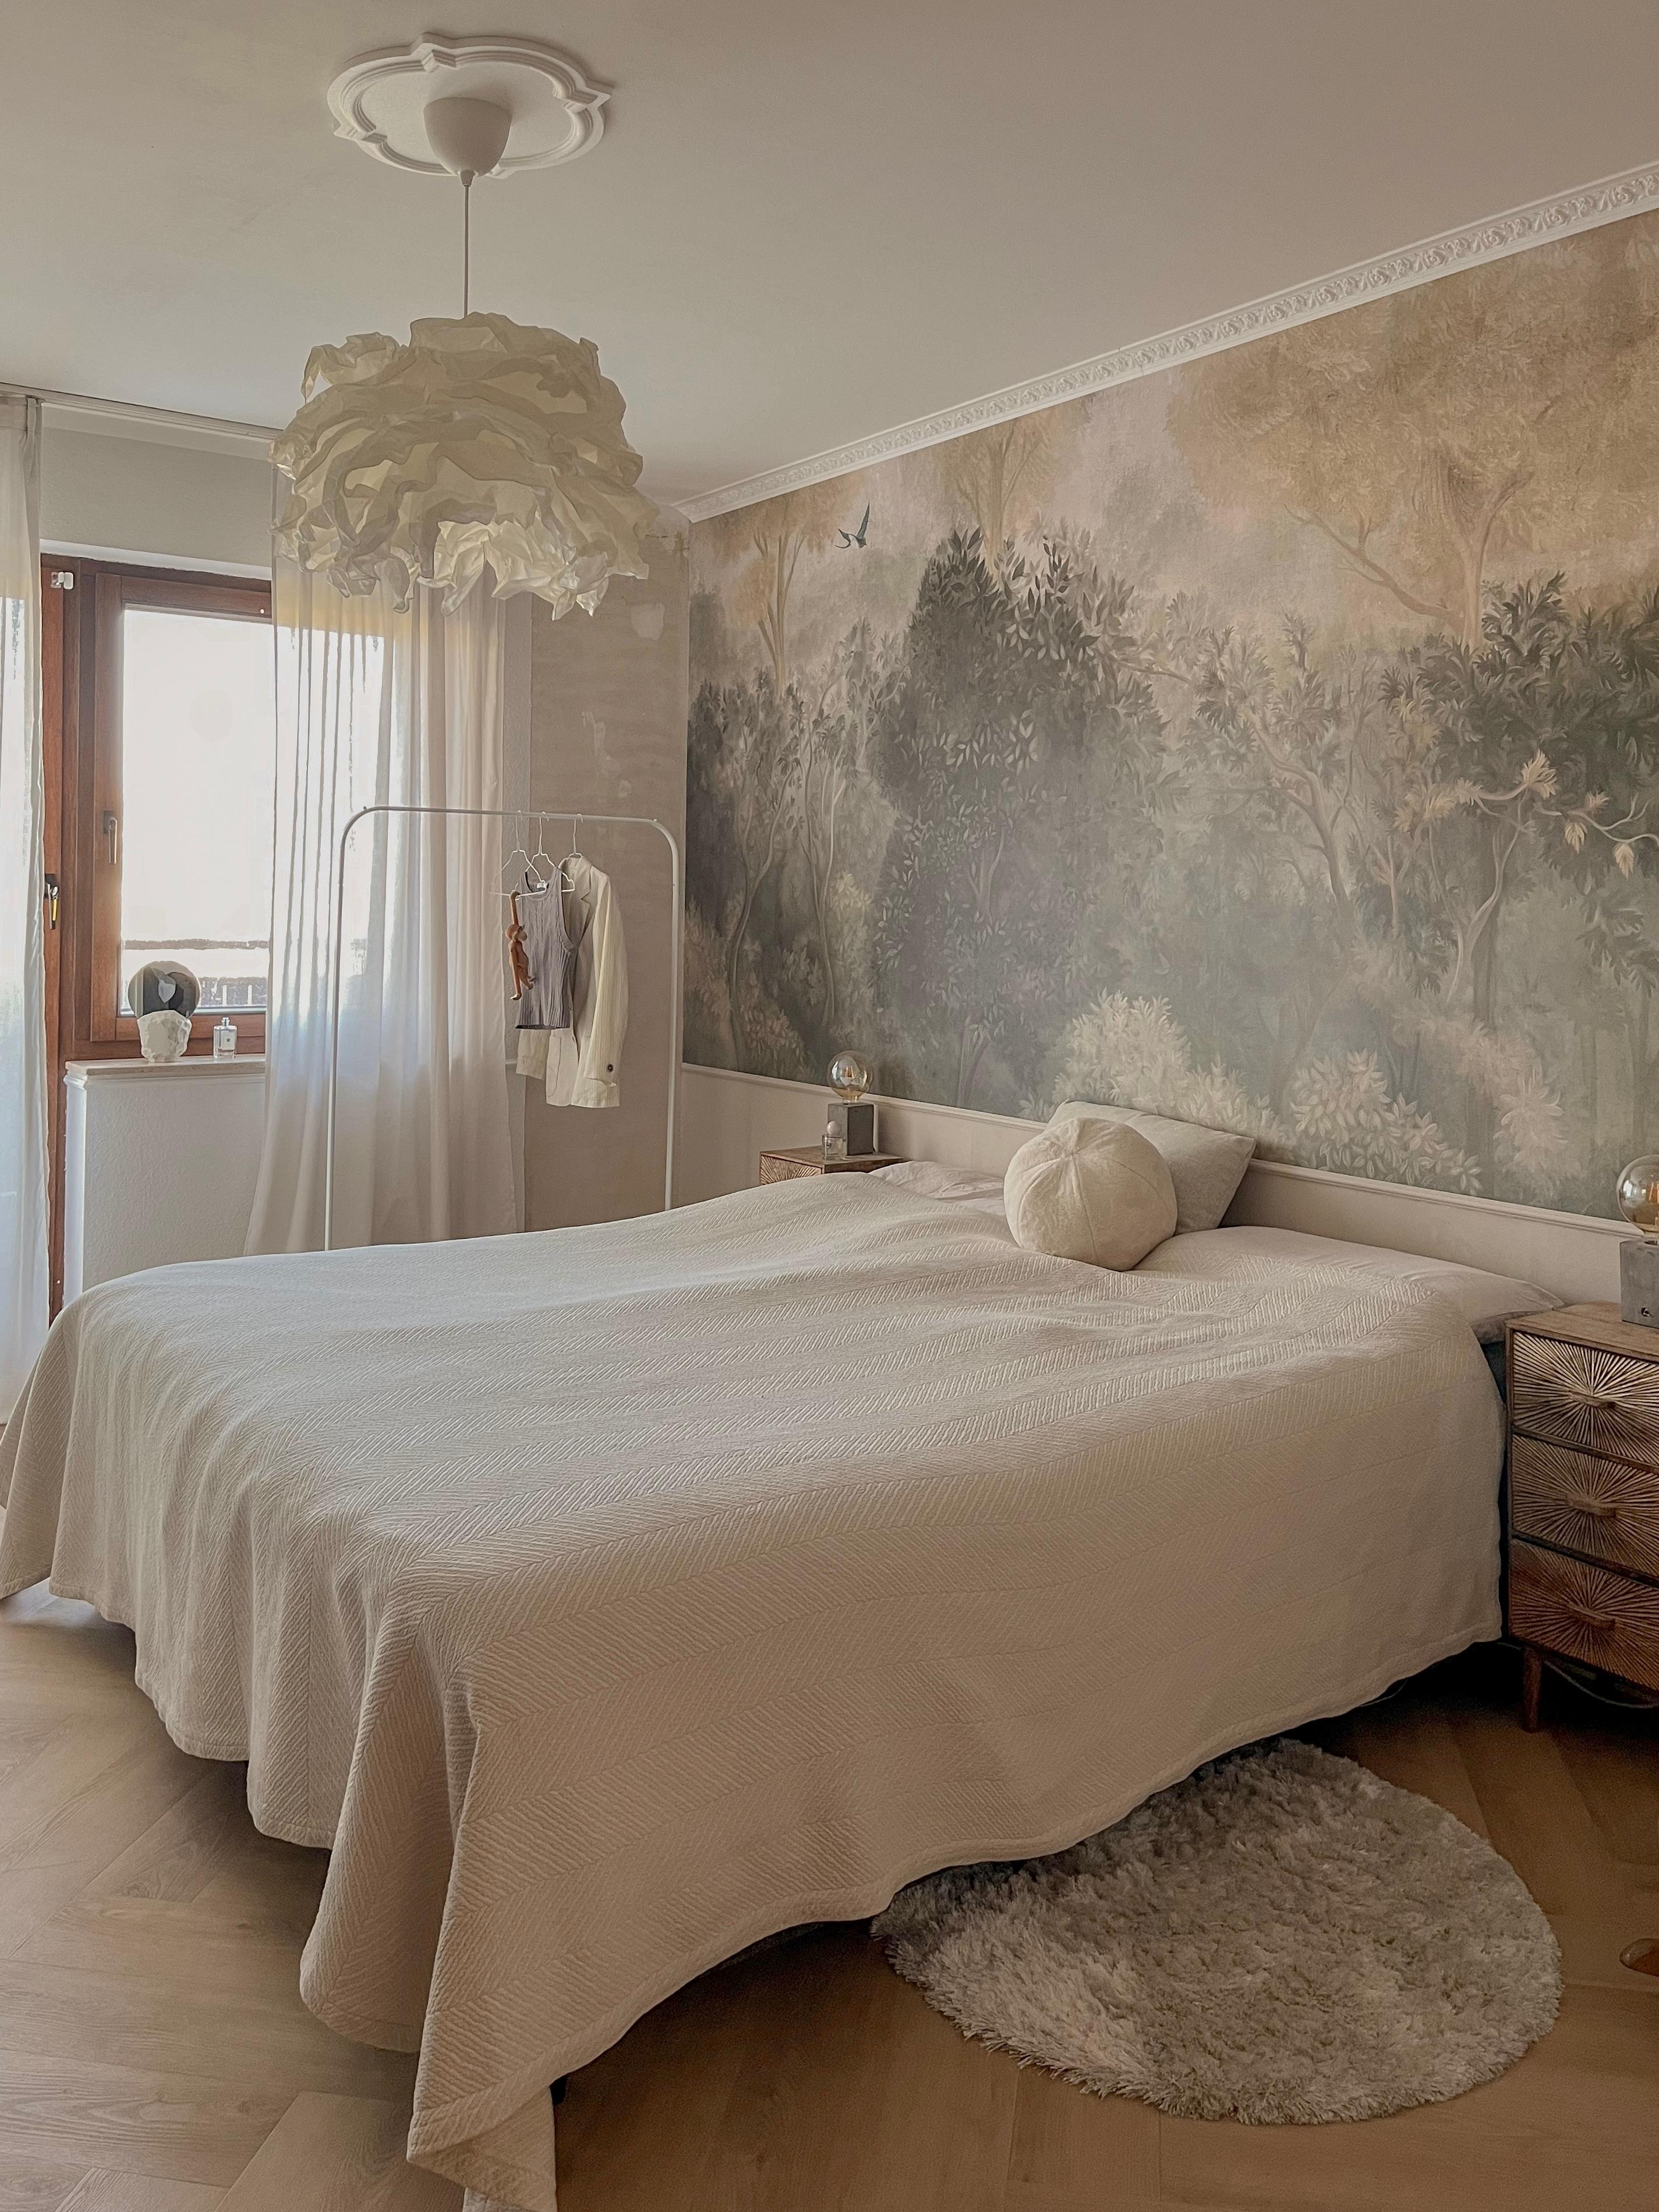 Unser Schlafzimmer Makeover mit neuer Tapete 🌳 #fototapete #tapete #schlafzimmer #tagesdecke #lampe #bett 